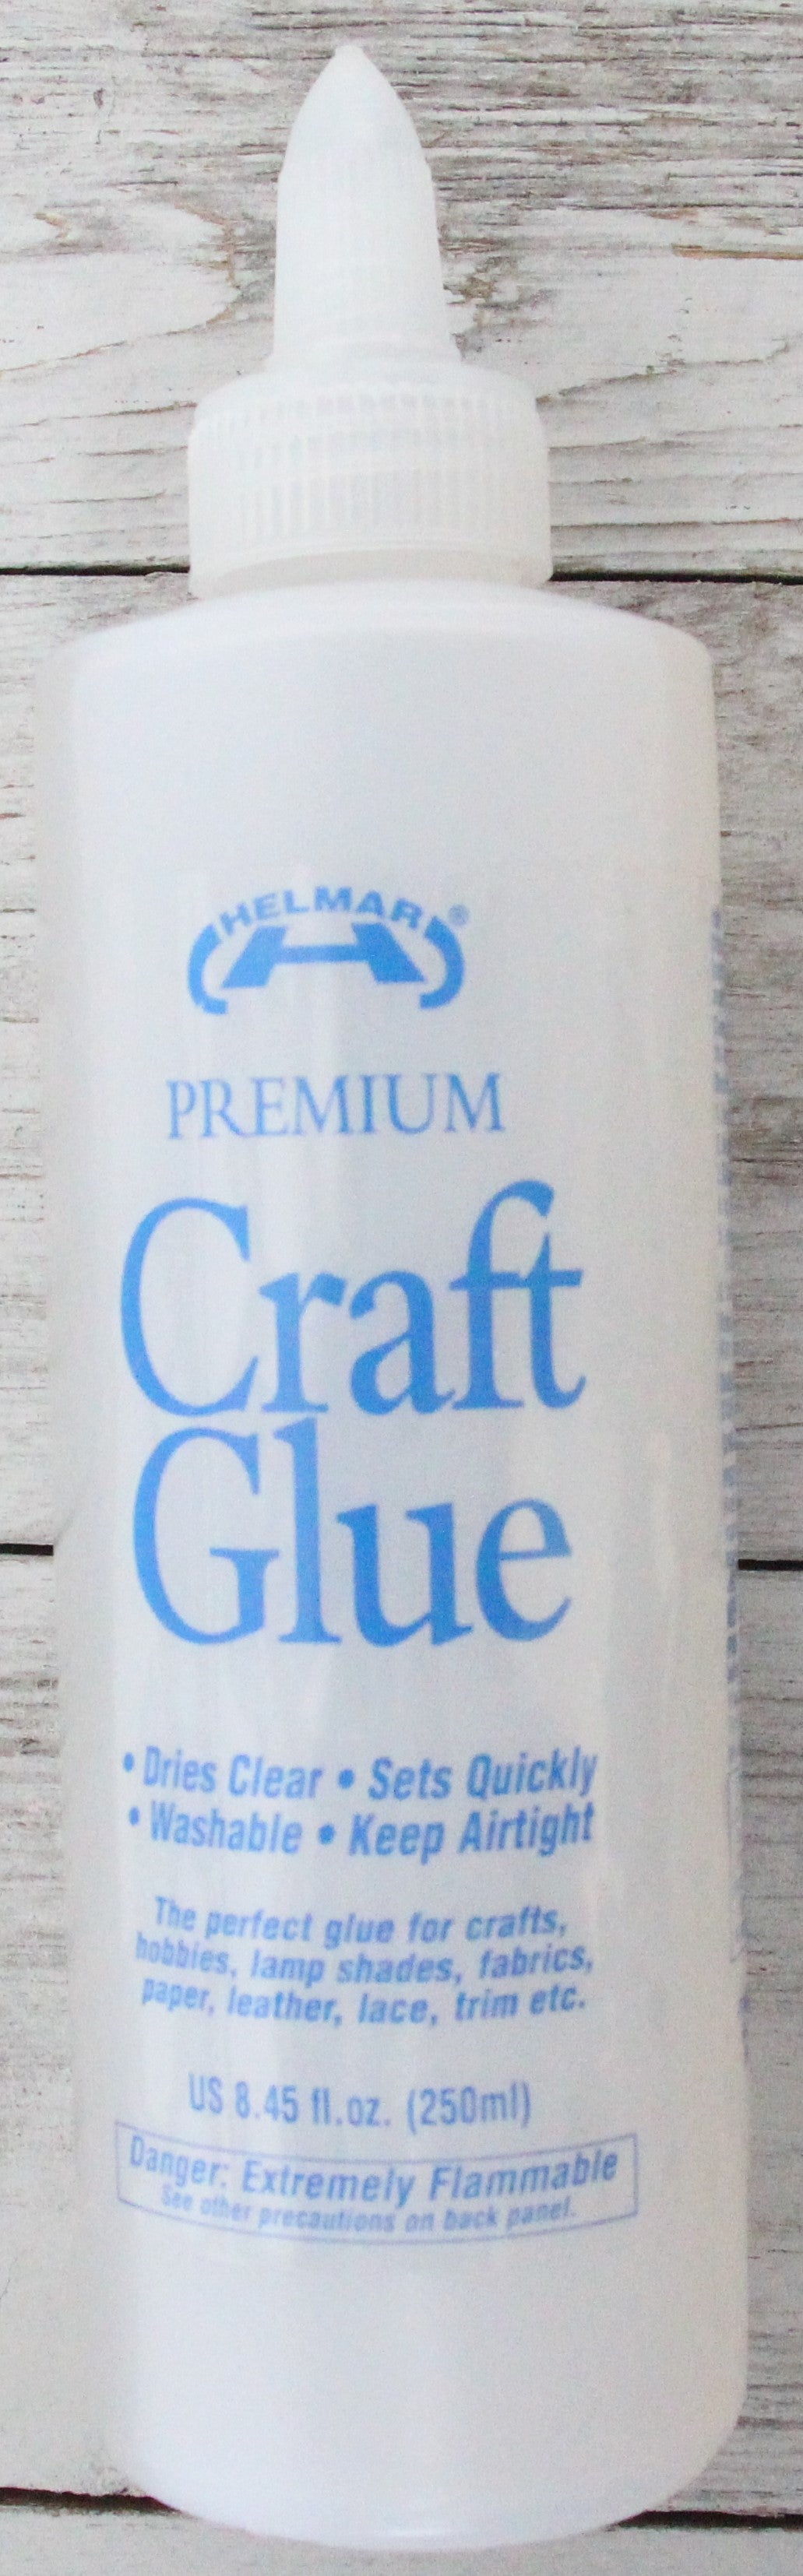 Premium Crafts Glue